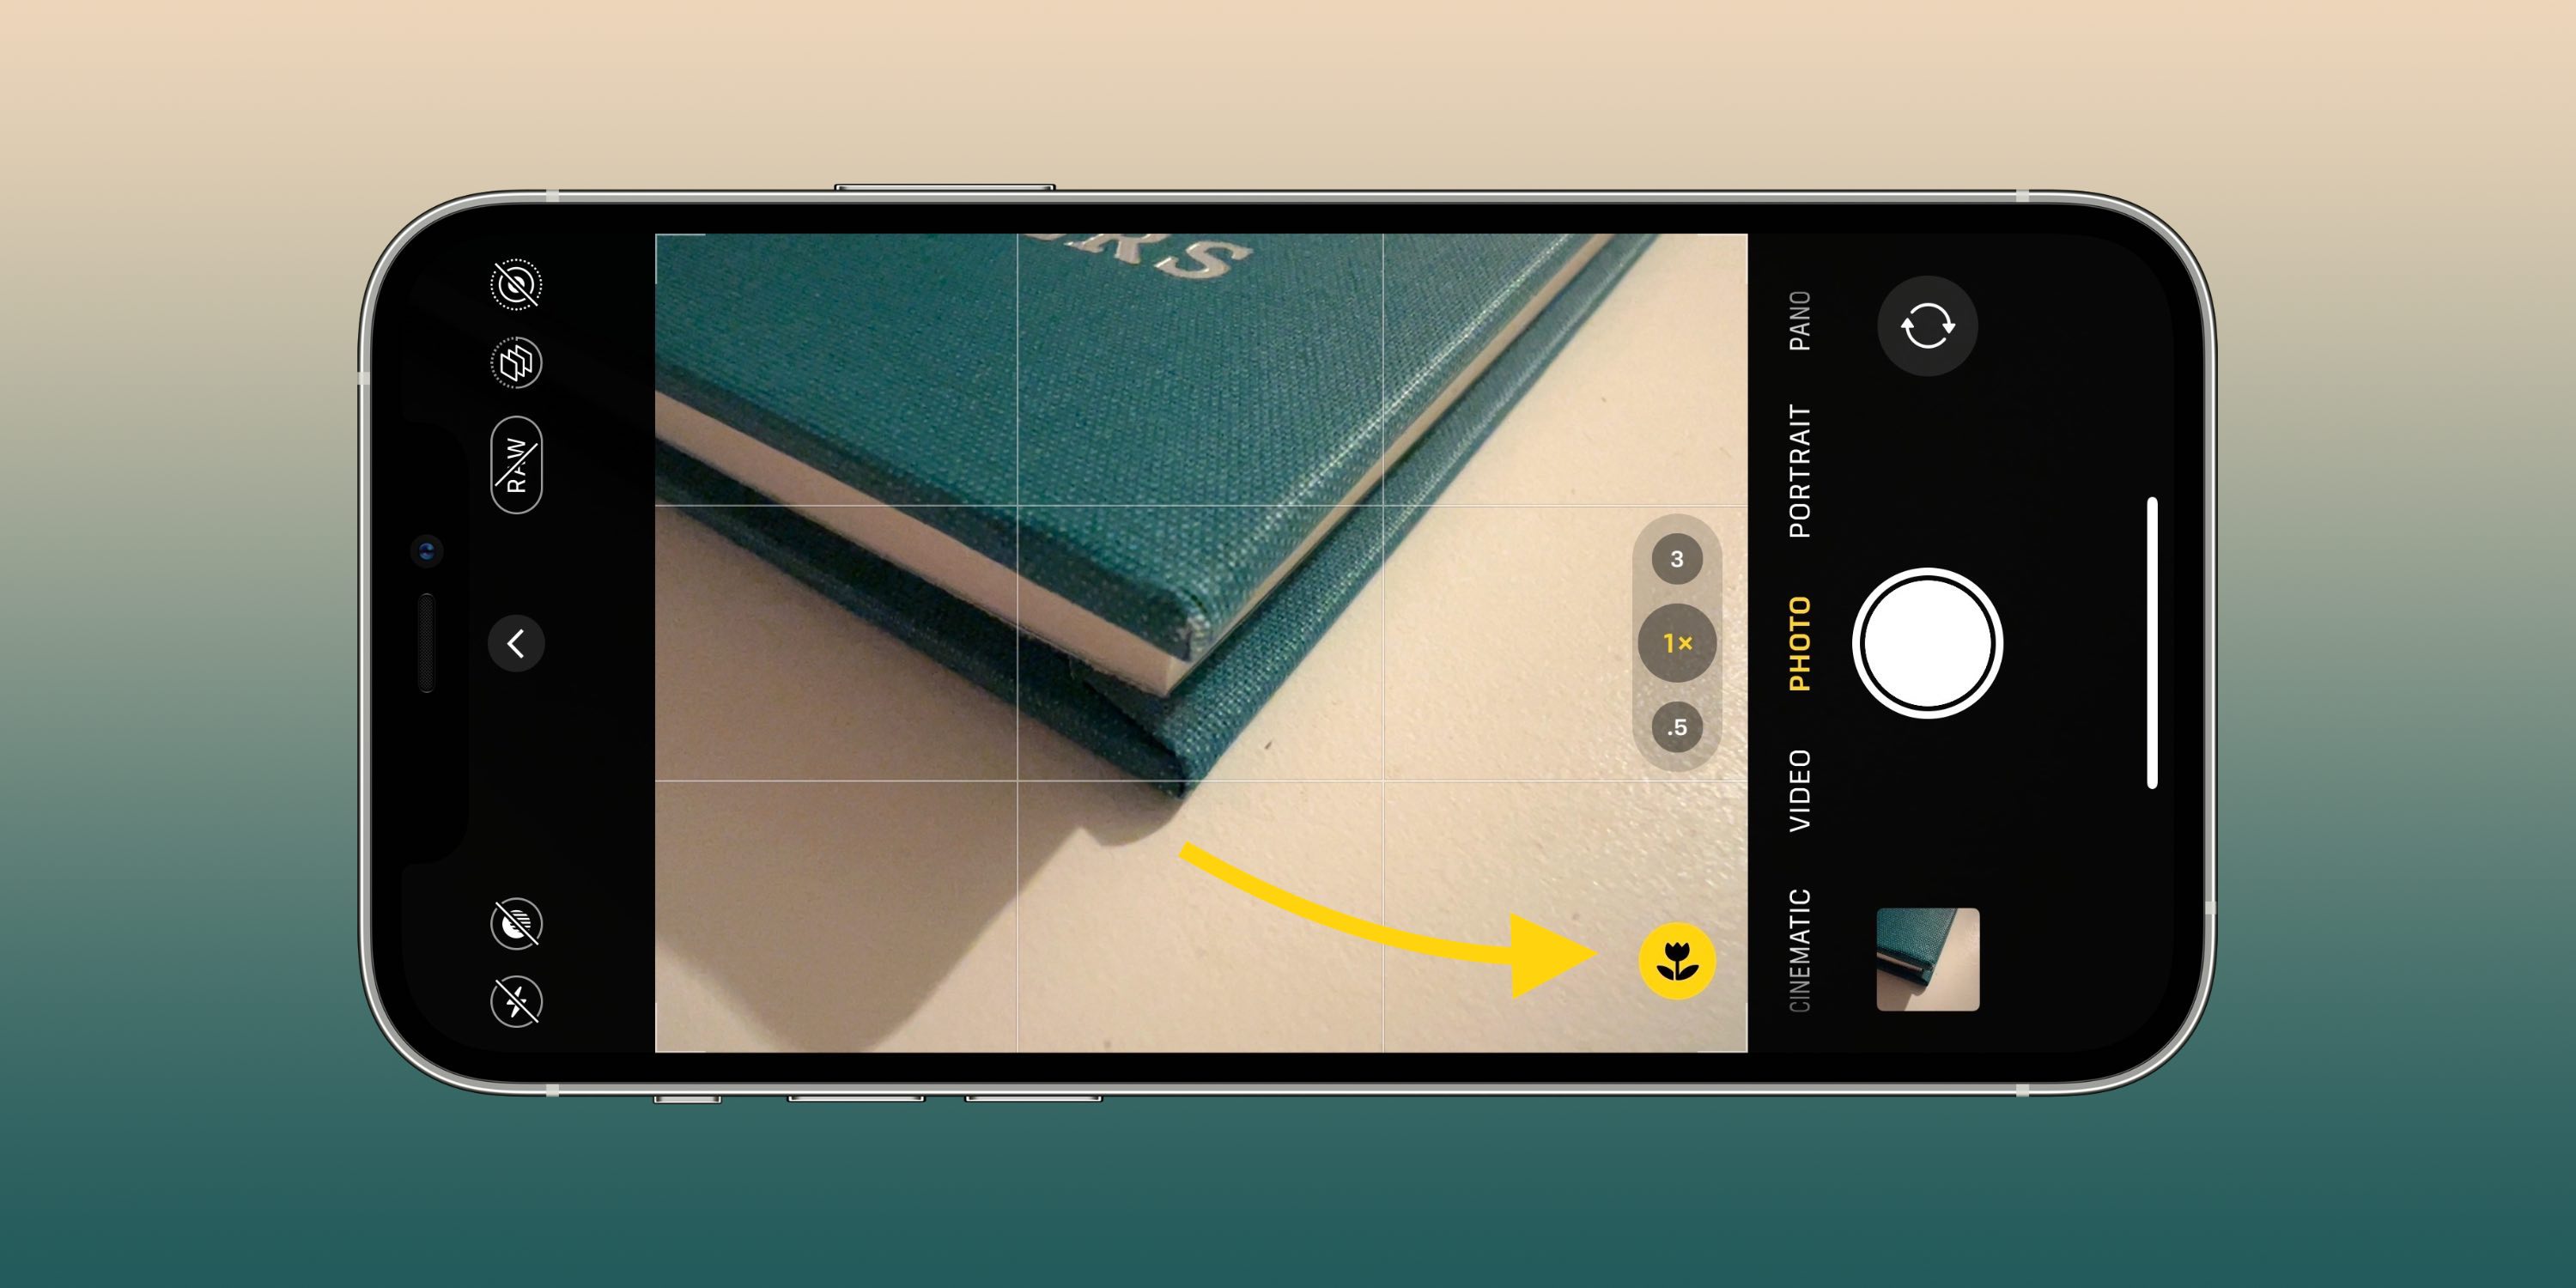 Diese Kameraeinstellungen können Ihnen dabei helfen, bessere Fotos und Videos auf Ihrem iPhone aufzunehmen